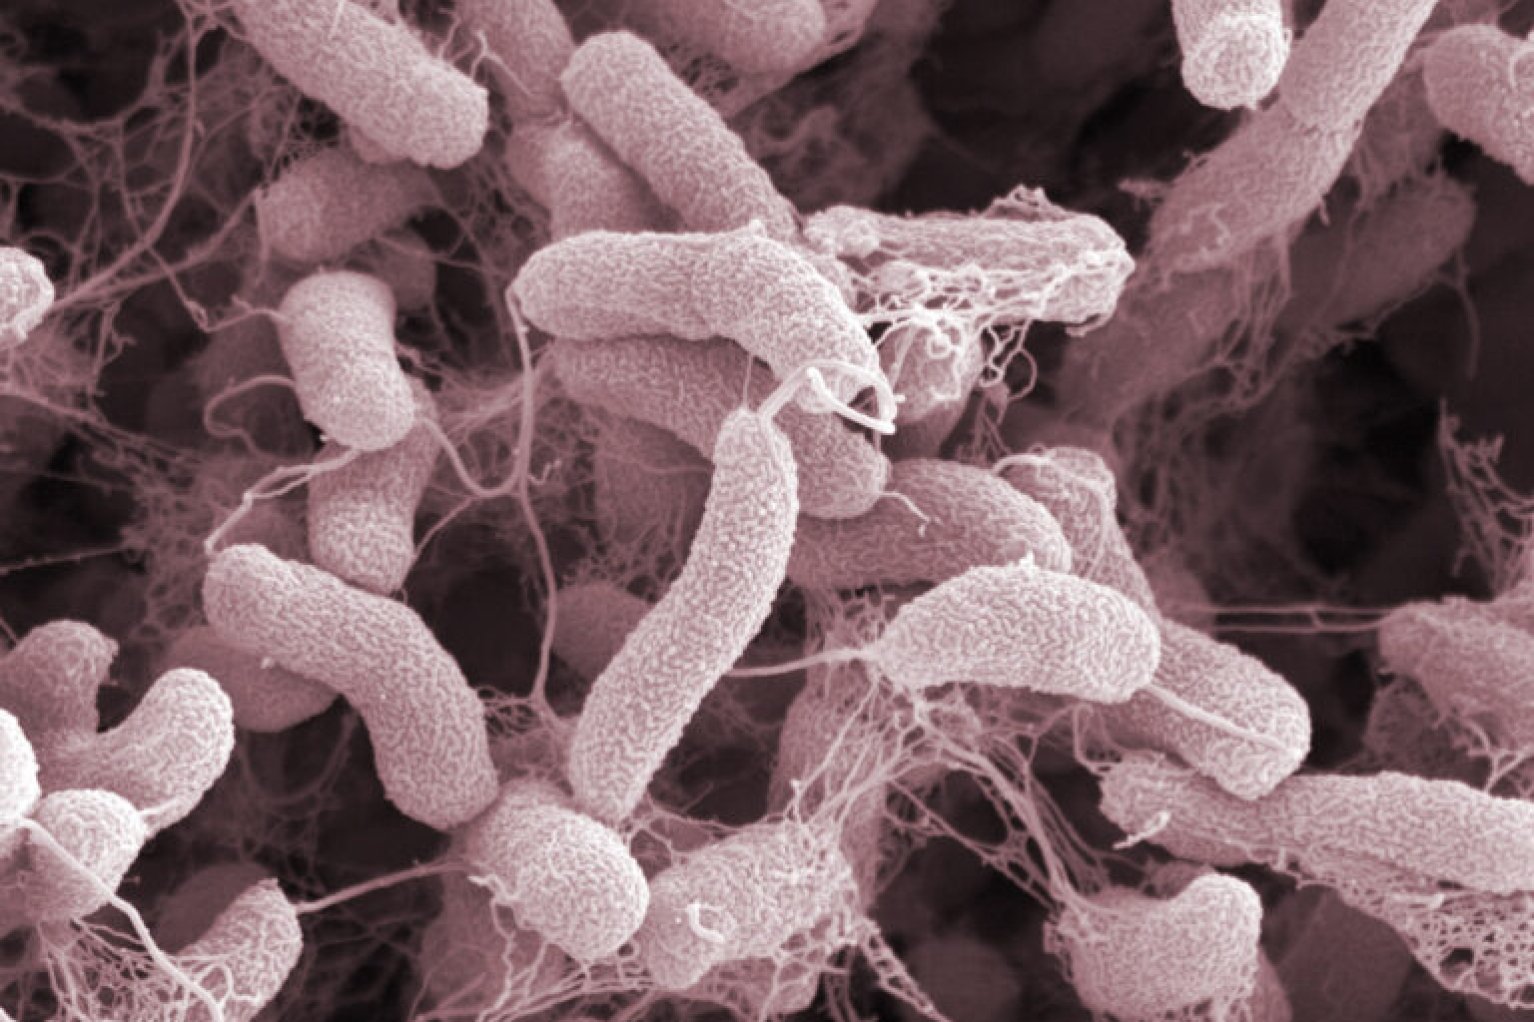 Микробы холеры